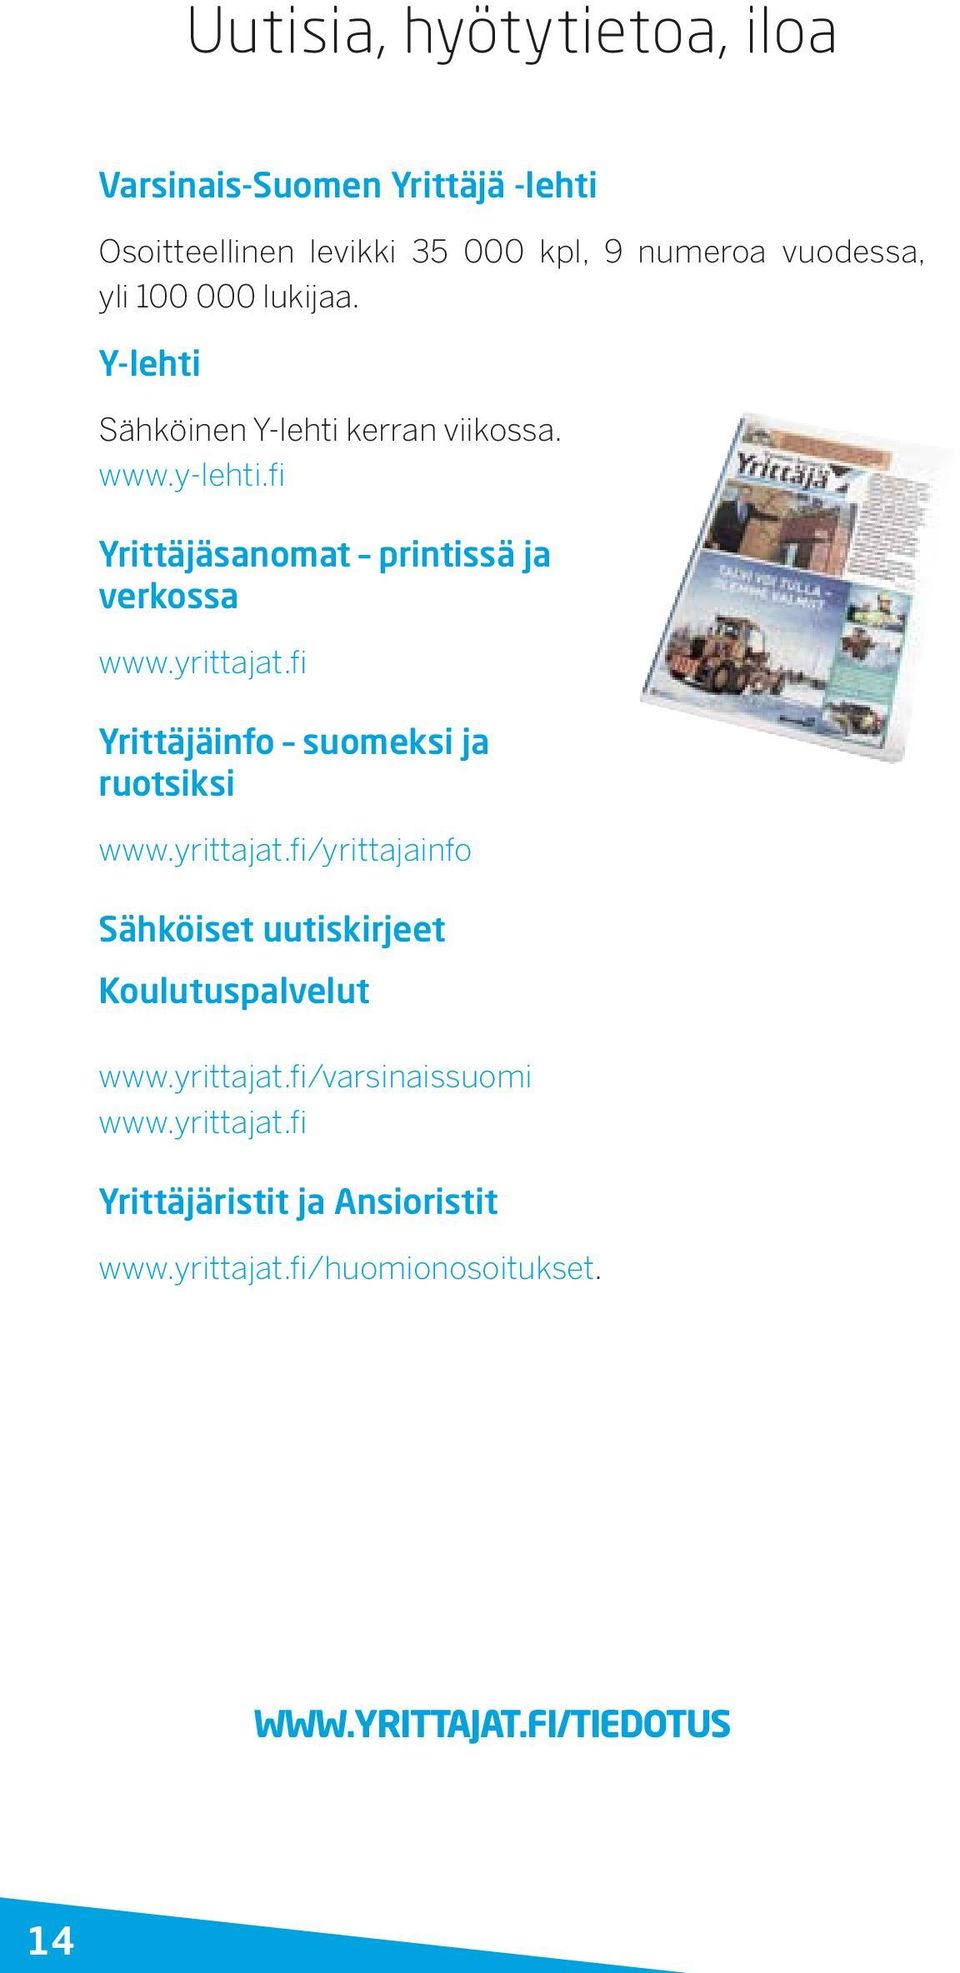 fi Yrittäjäinfo suomeksi ja ruotsiksi www.yrittajat.fi/yrittajainfo Sähköiset uutiskirjeet Koulutuspalvelut www.yrittajat.fi/varsinaissuomi www.